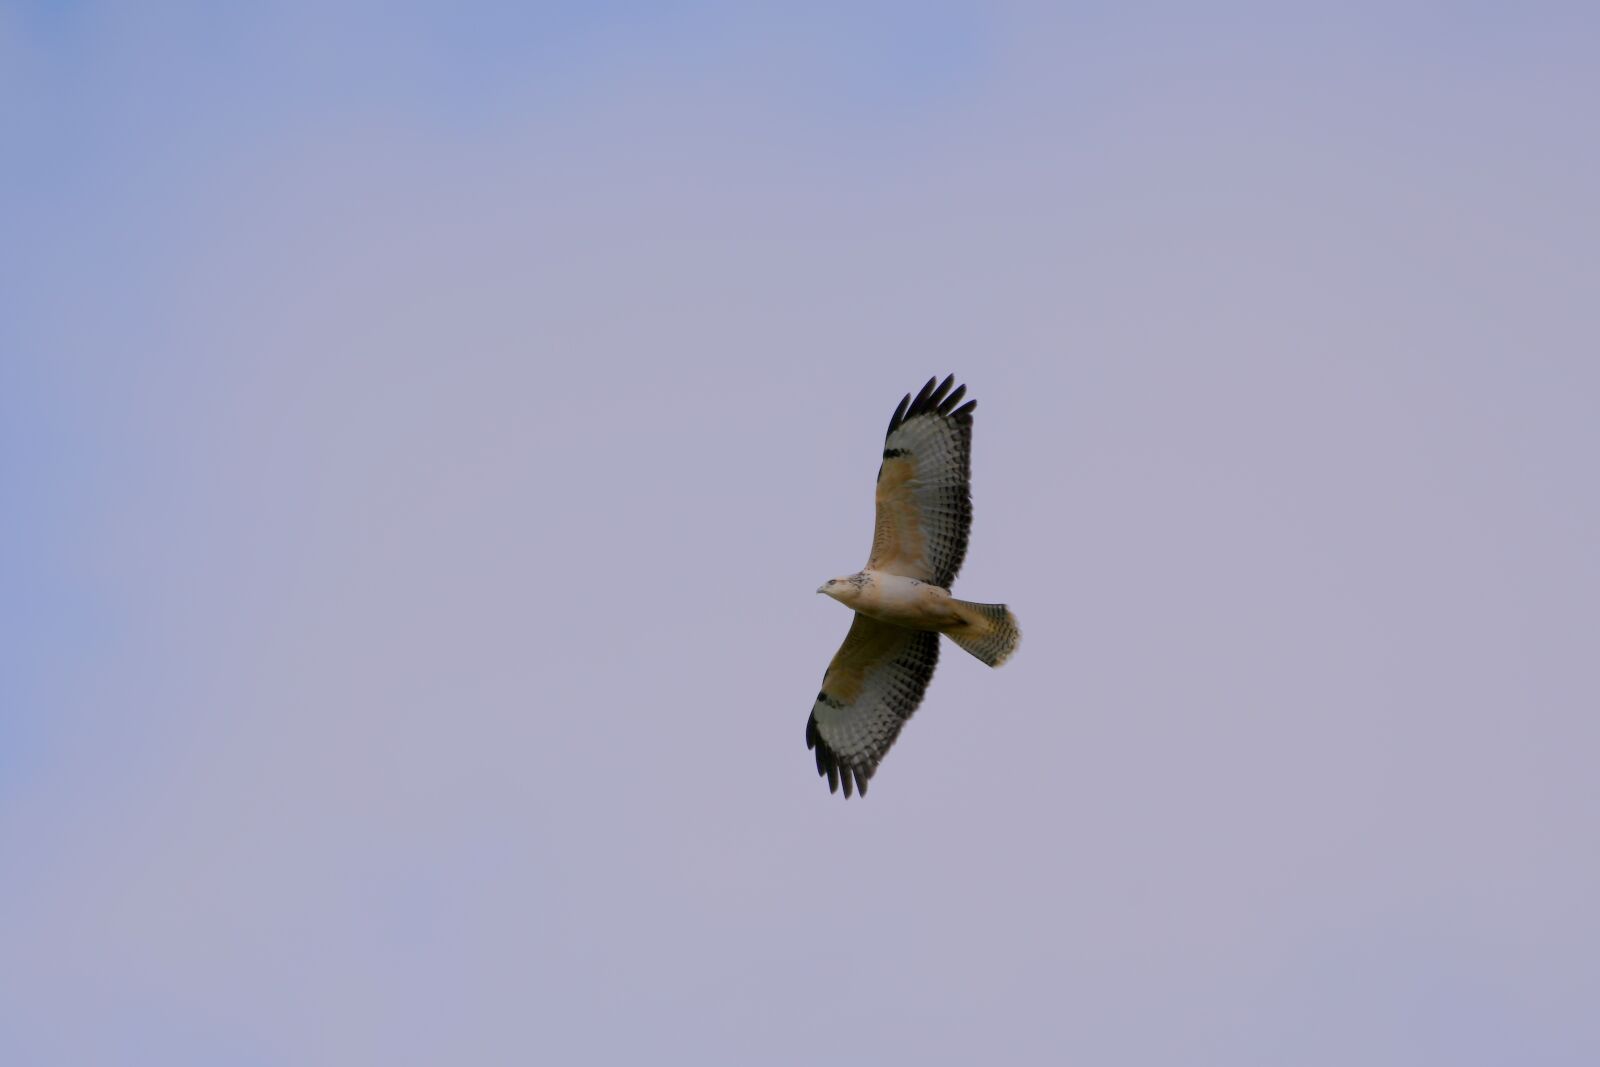 Nikon D500 sample photo. Common buzzard, bird of photography